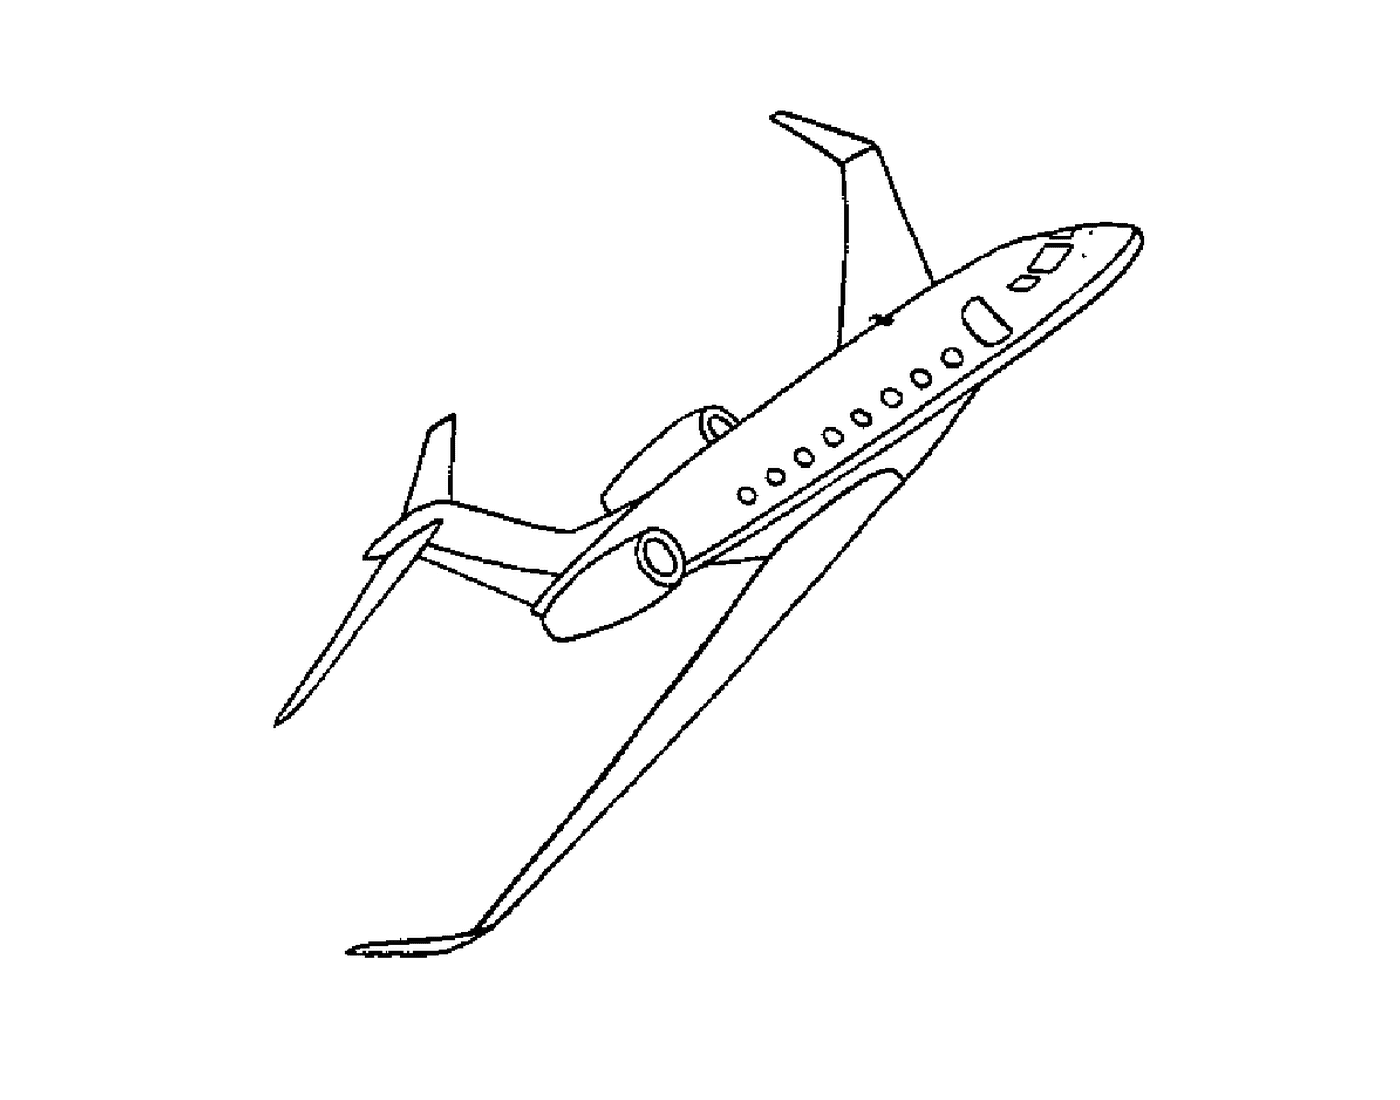  Un aereo che vola 